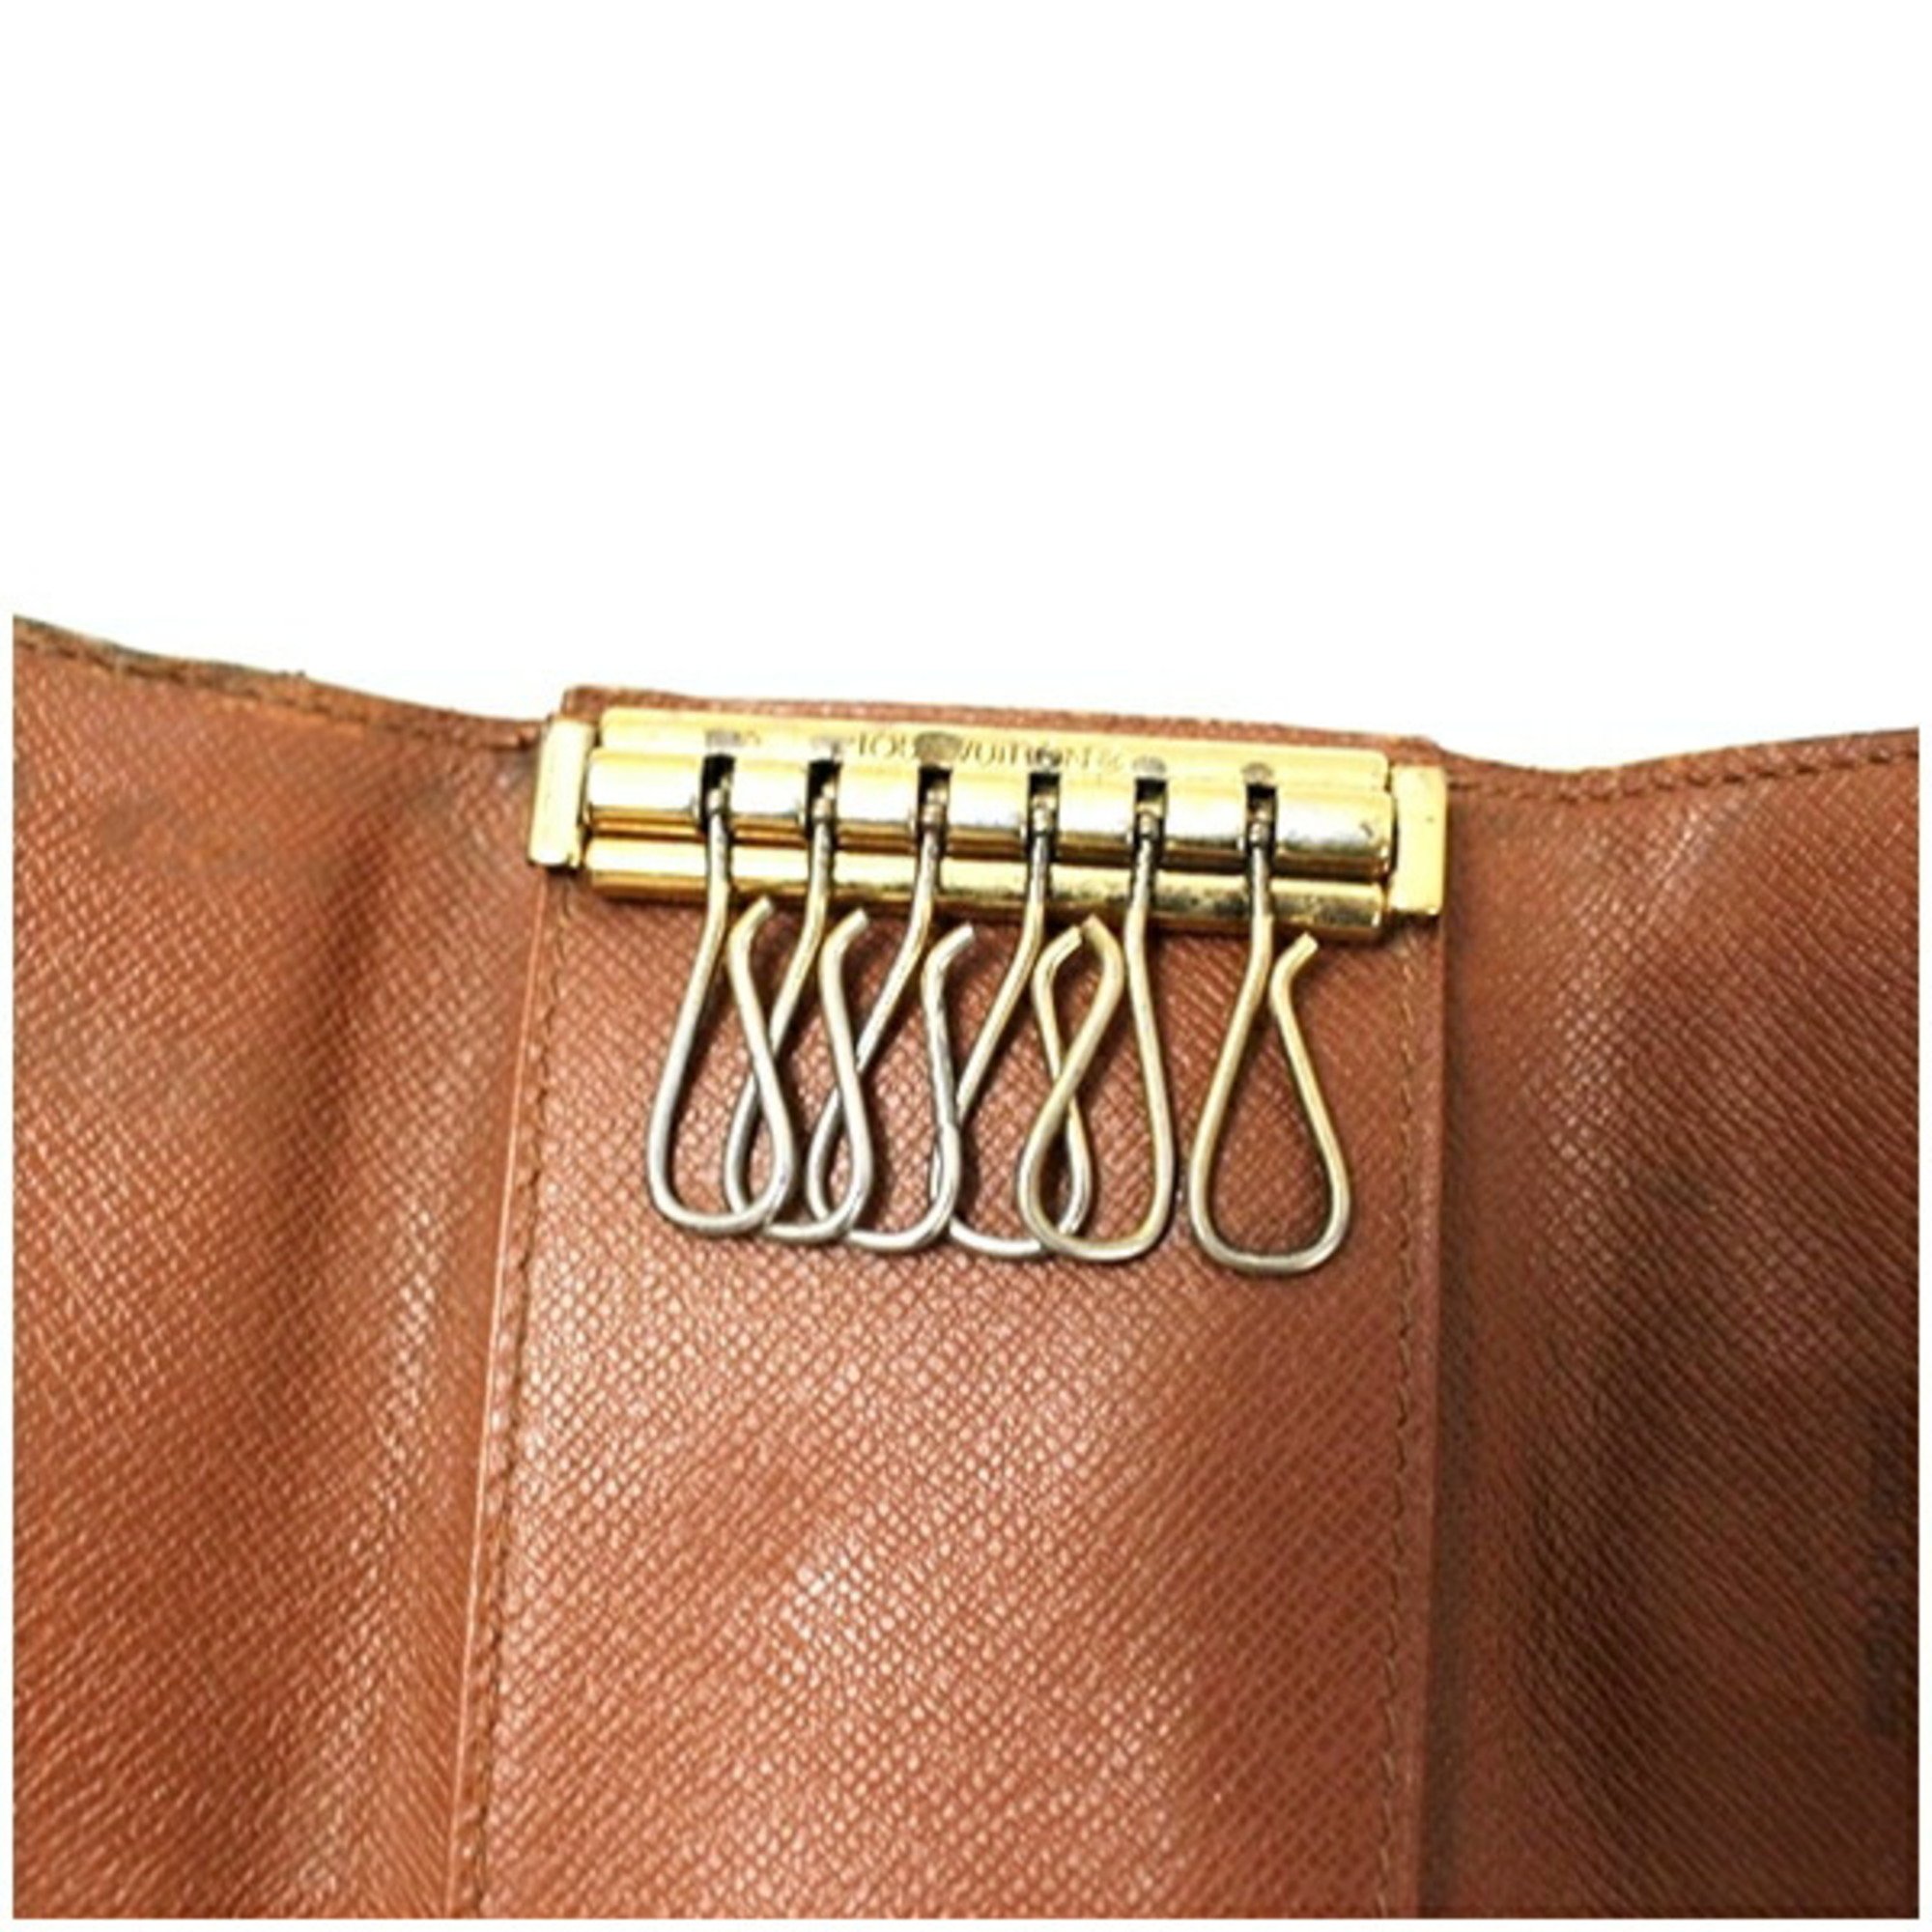 Louis Vuitton Monogram Multicle 6 6-Key Case M62630 LOUIS VUITTON Men's Unisex Keys